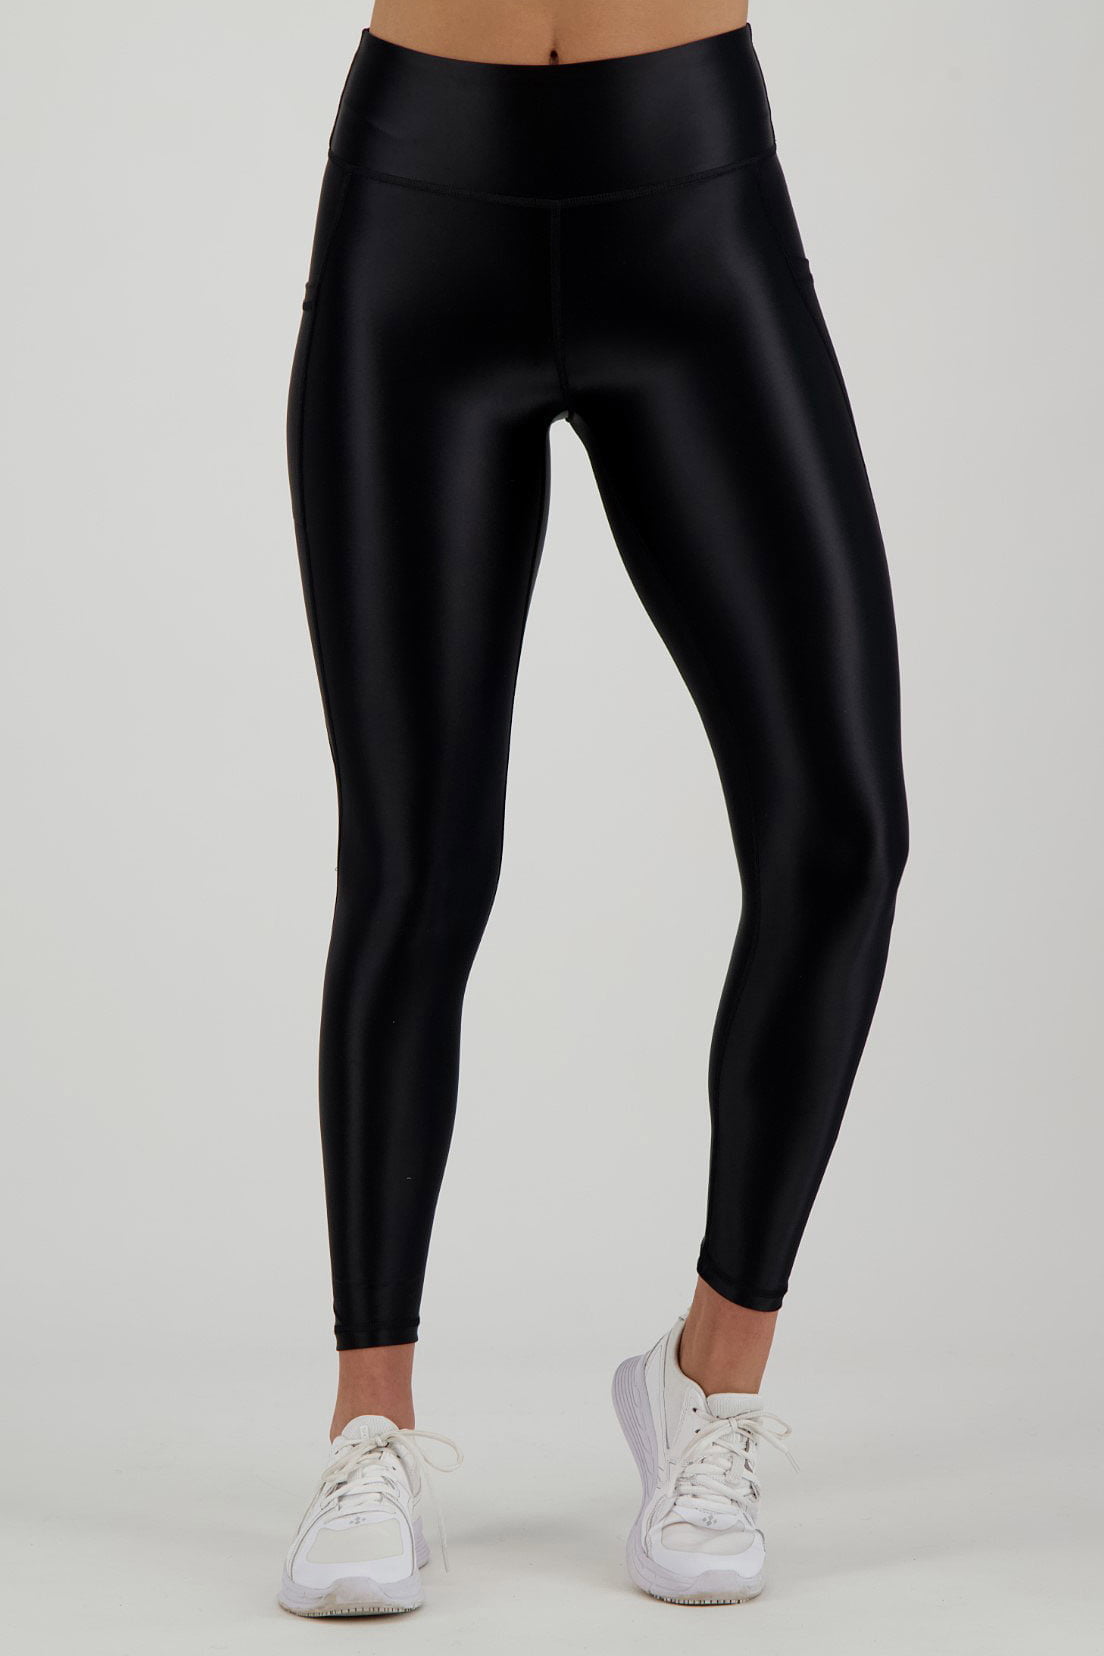 Shiny High Waist Pocket Legging black - Sports leggings - FITTwear.co.uk